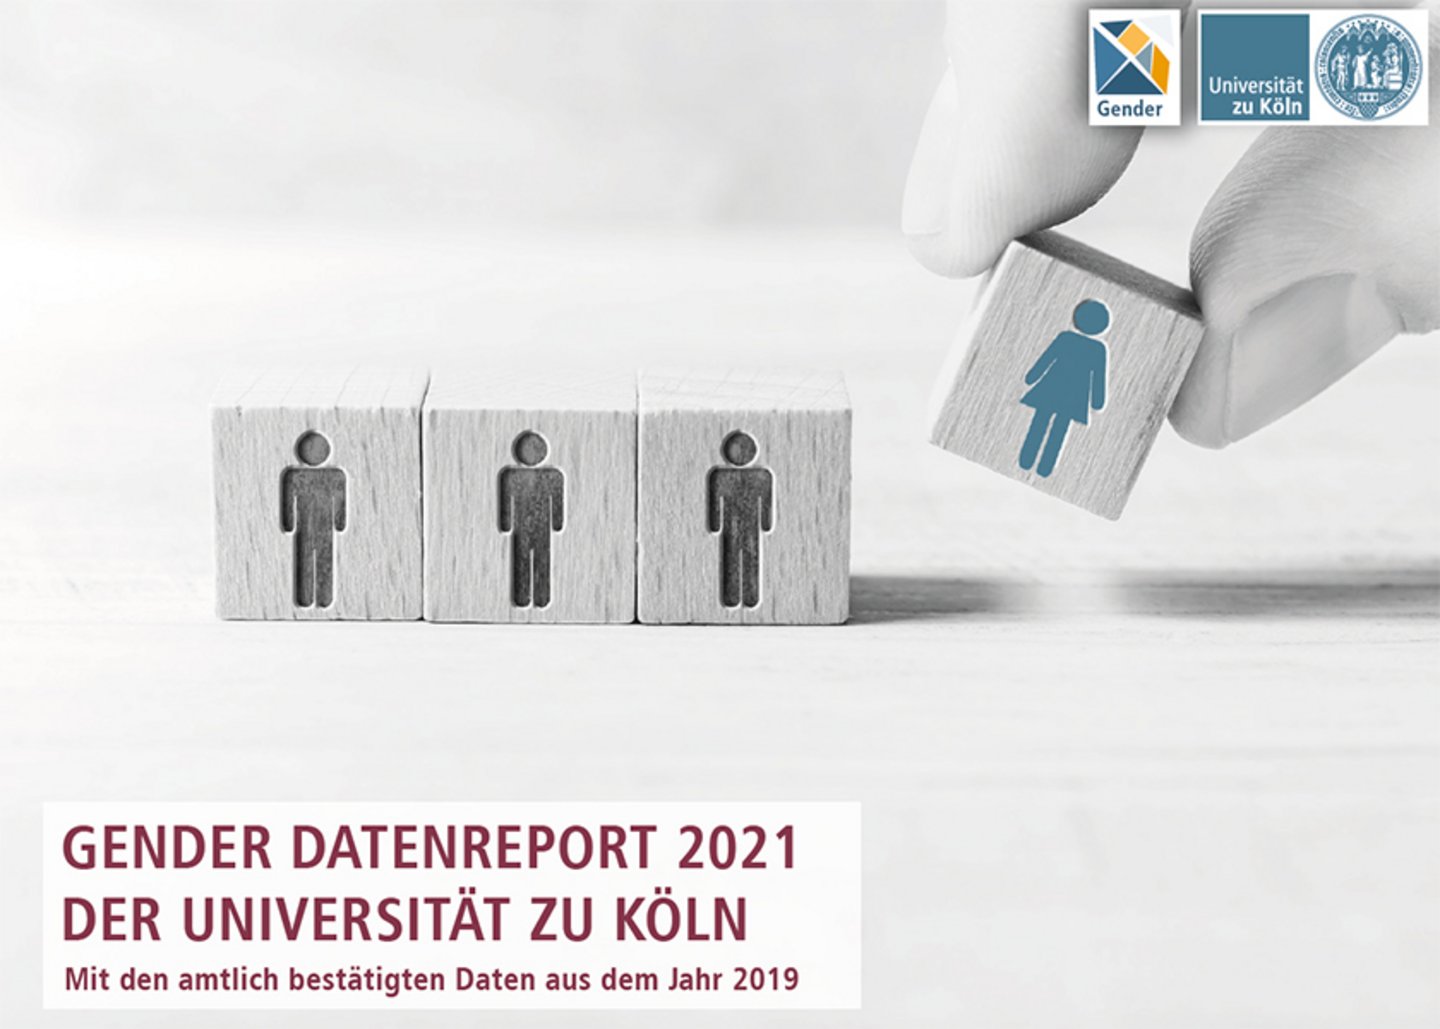 Die Abbildung zeigt das Cover des Gender Datenreport 2021 der Universität zu Köln. Zu sehen sind vier Holzklötze, auf denen drei mit einer männlichen Figur bedruckt sind und einer mit einer weiblichen Figur, der gerade von einer Hand dazugestellt wird.